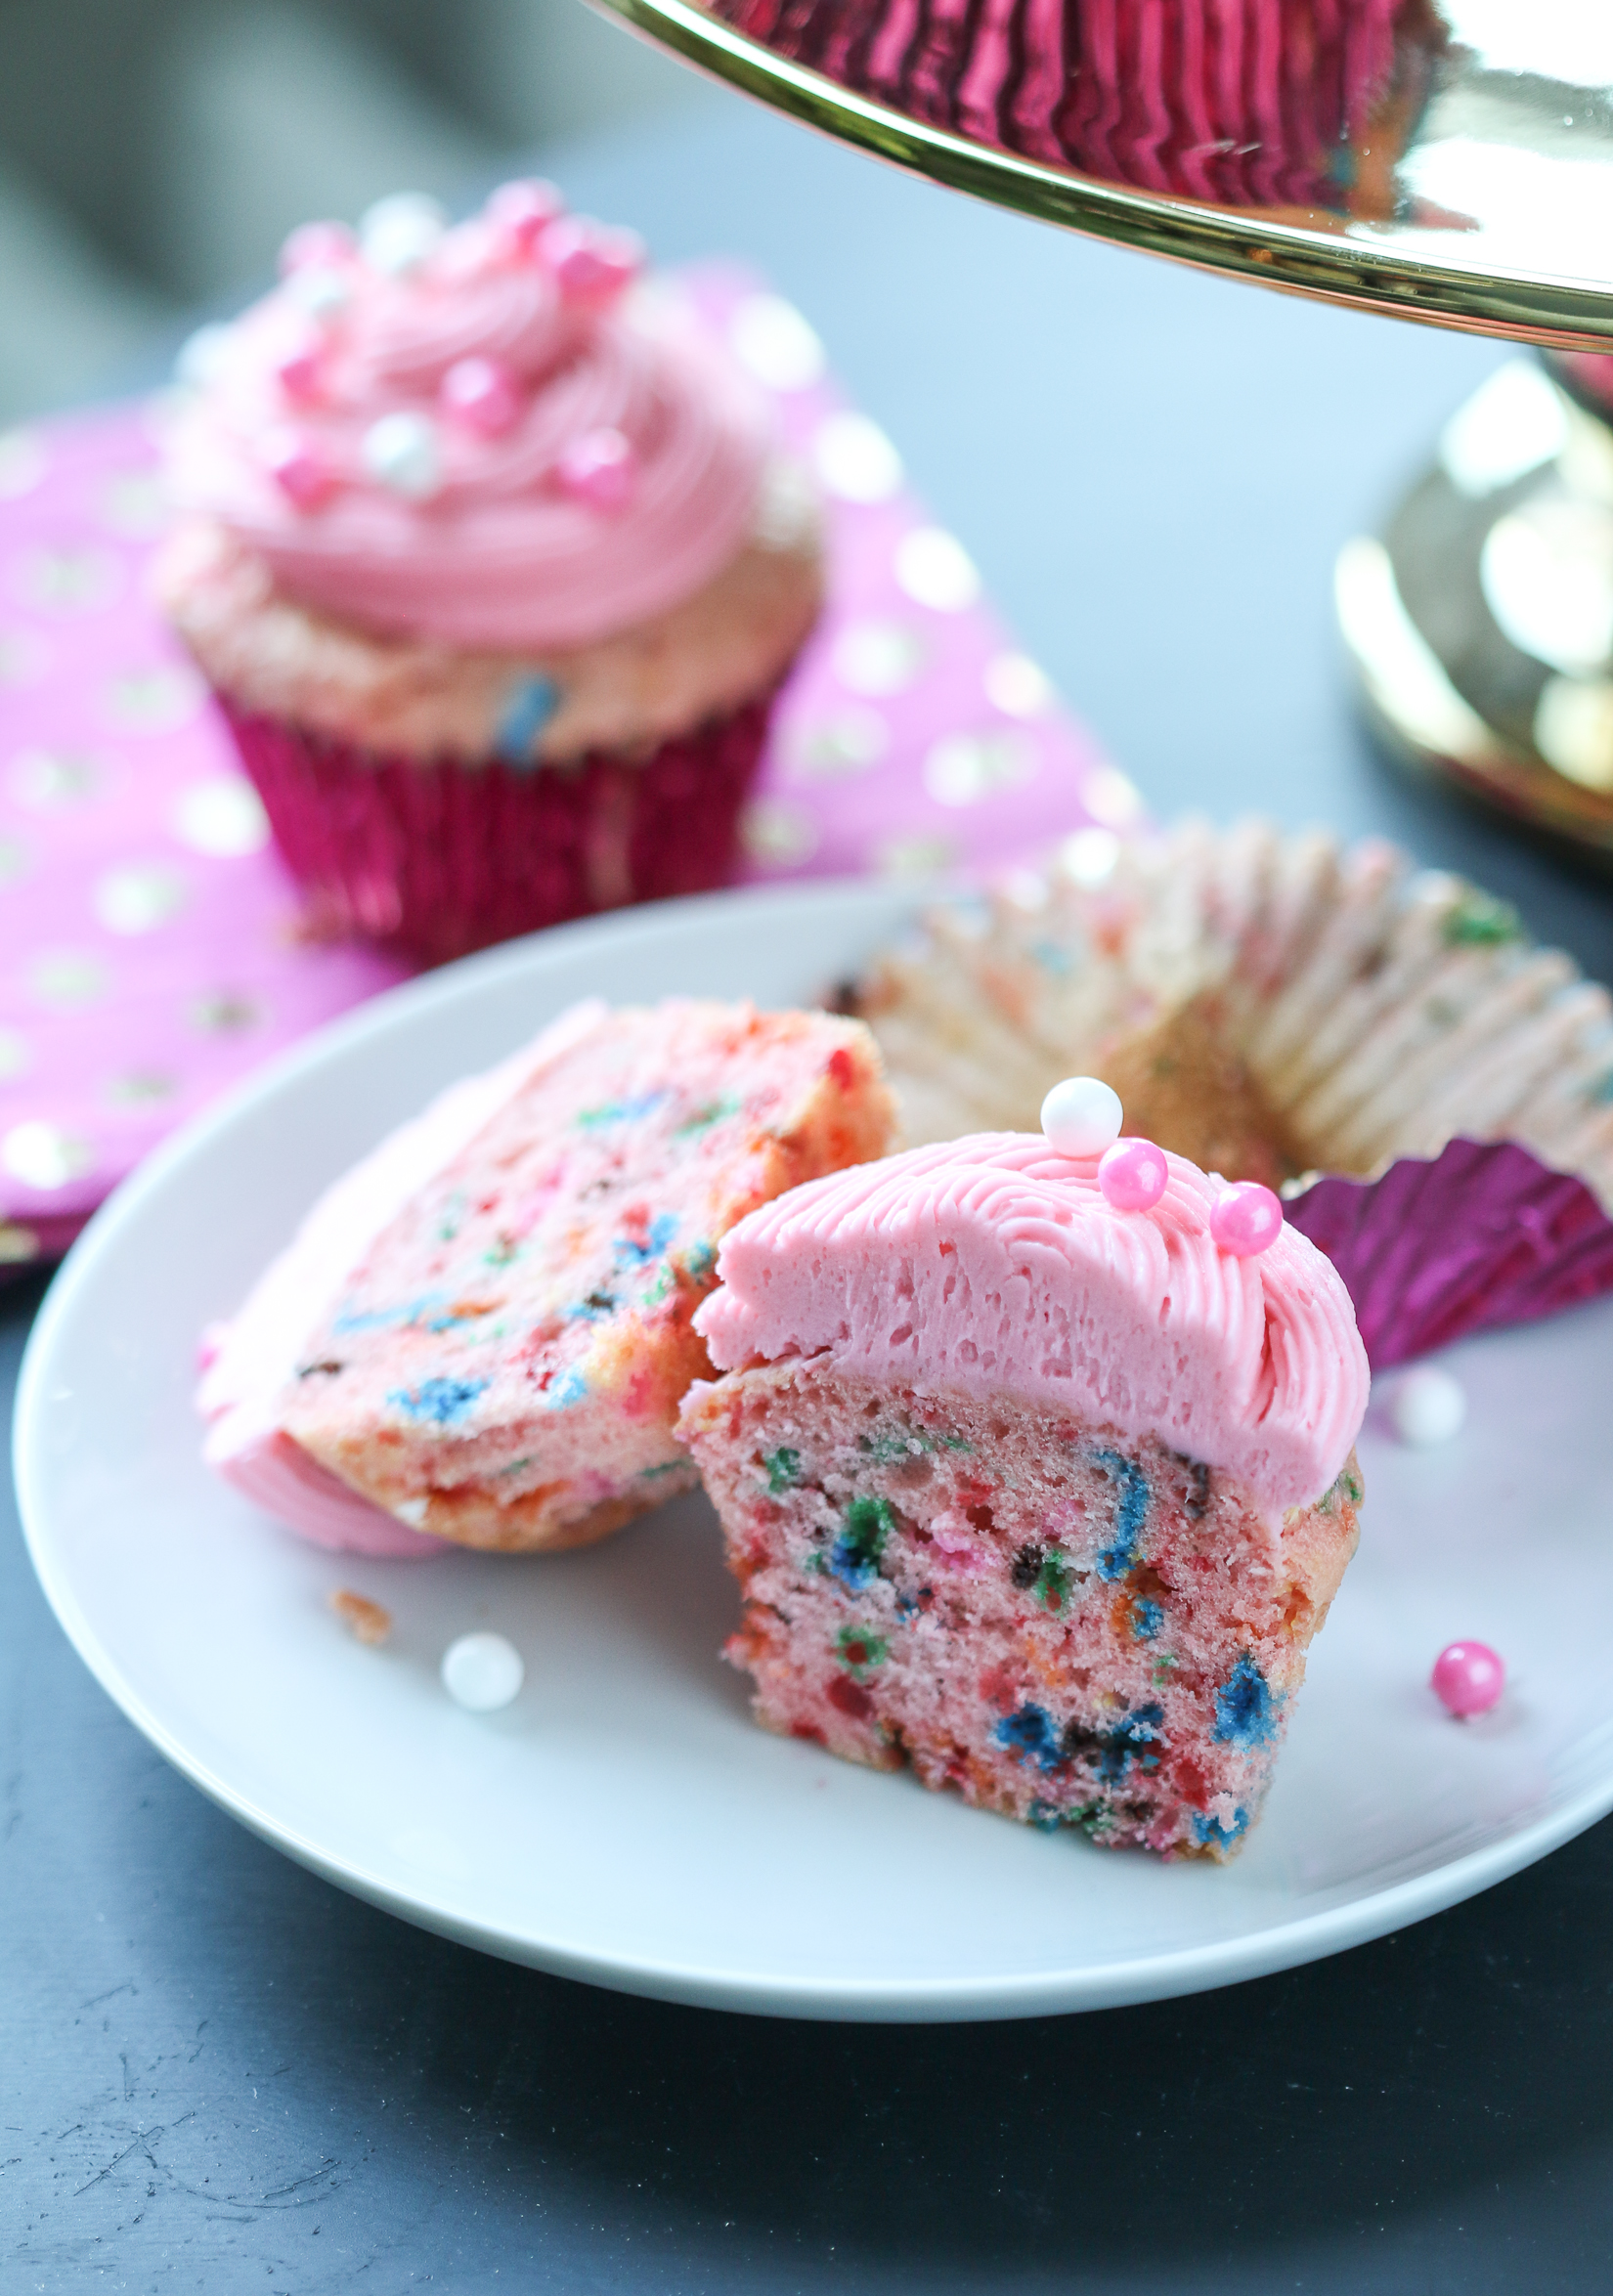 Pink funfetti cupcake cut in half on a white plate